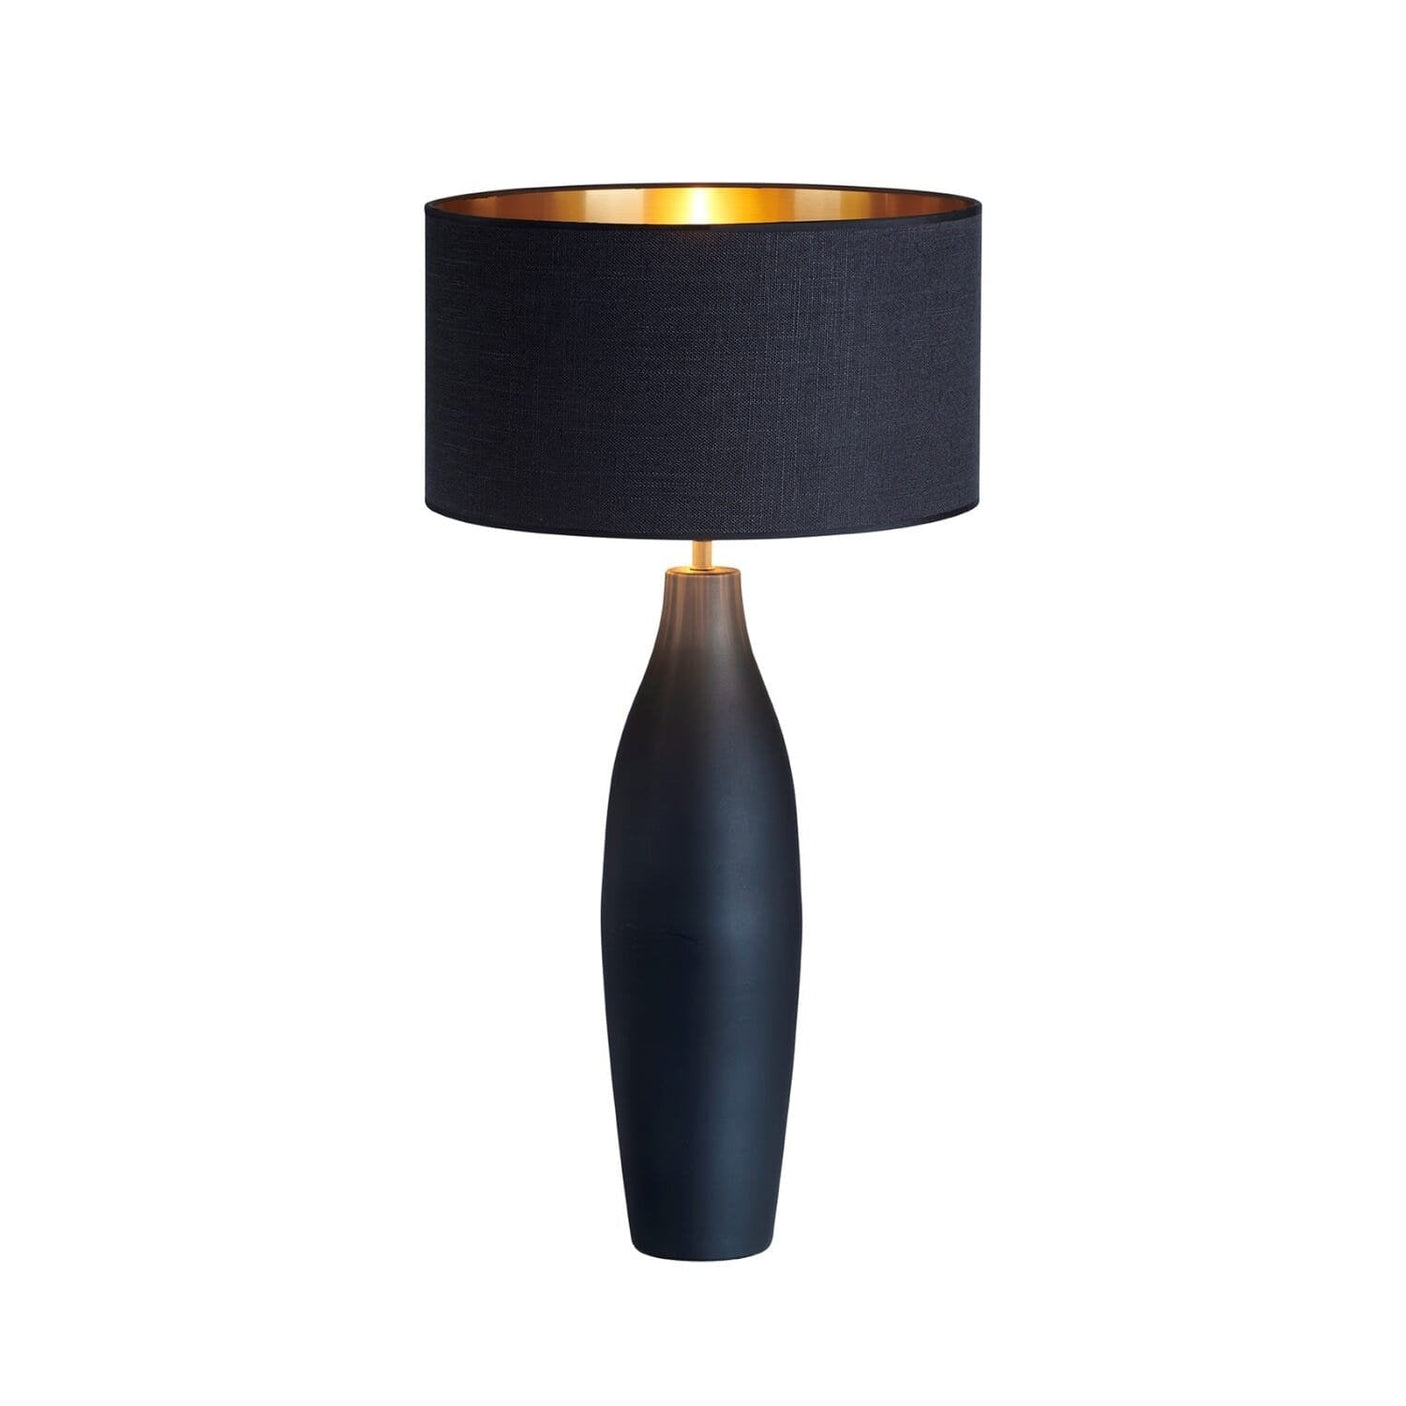 Bordlampe Cosby sort - -Homefactory -Nordstrand Møbler og Interiør